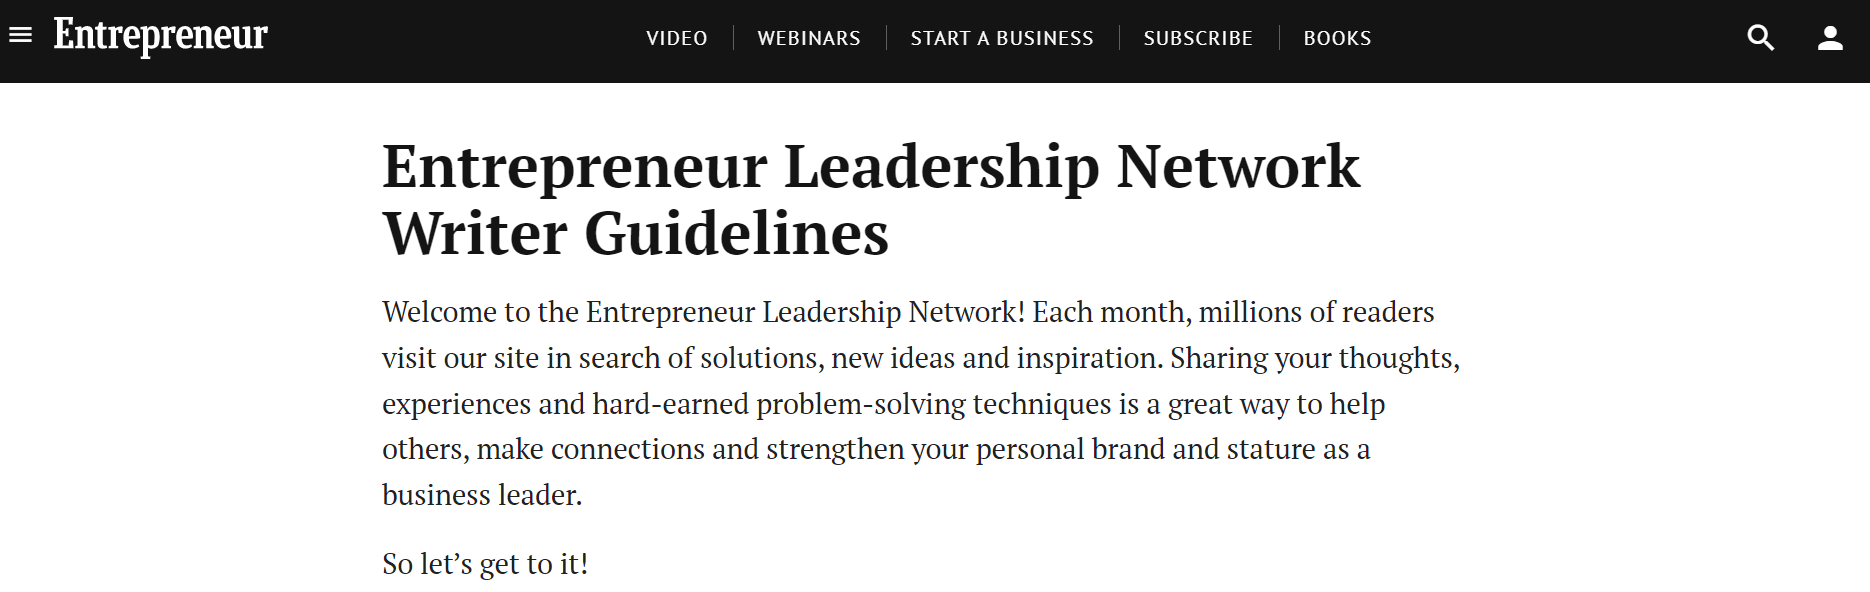 Entrepreneur Leadership Network Writer Guidelines